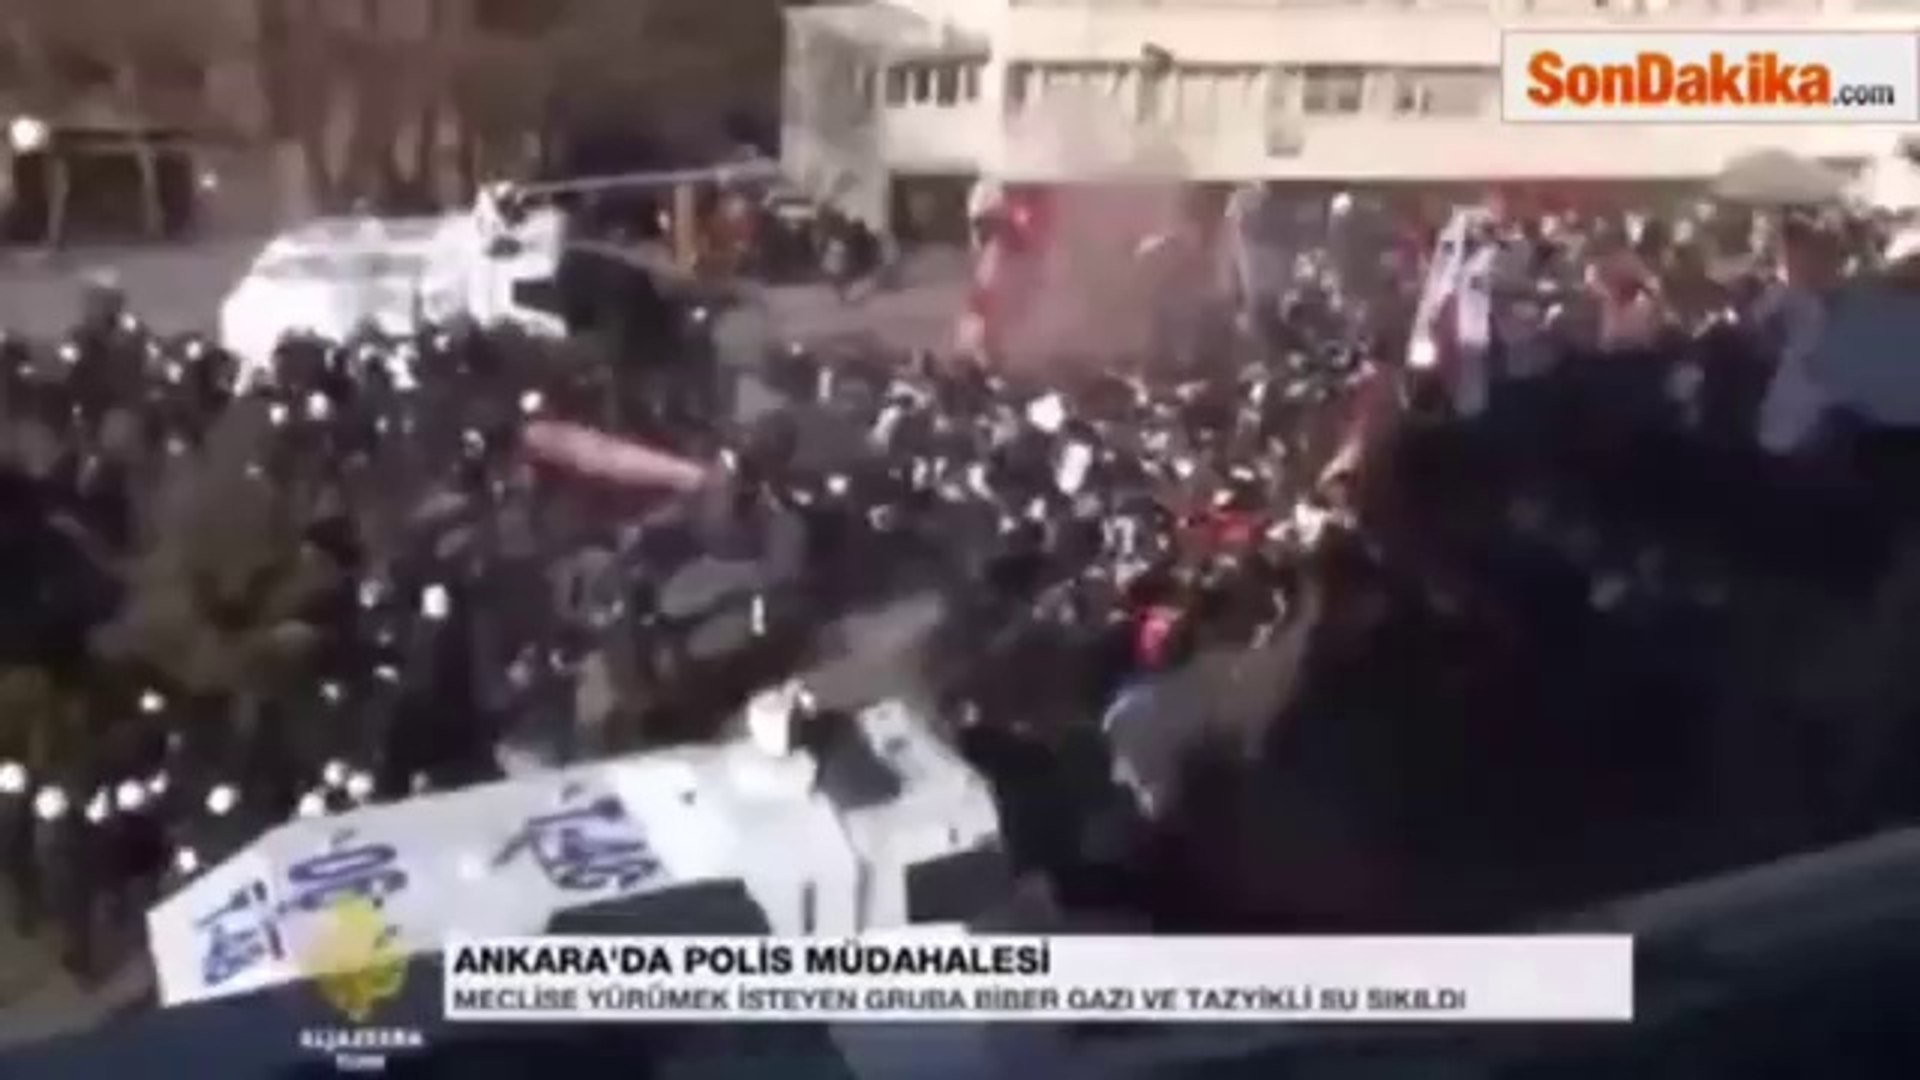 Turkey riots